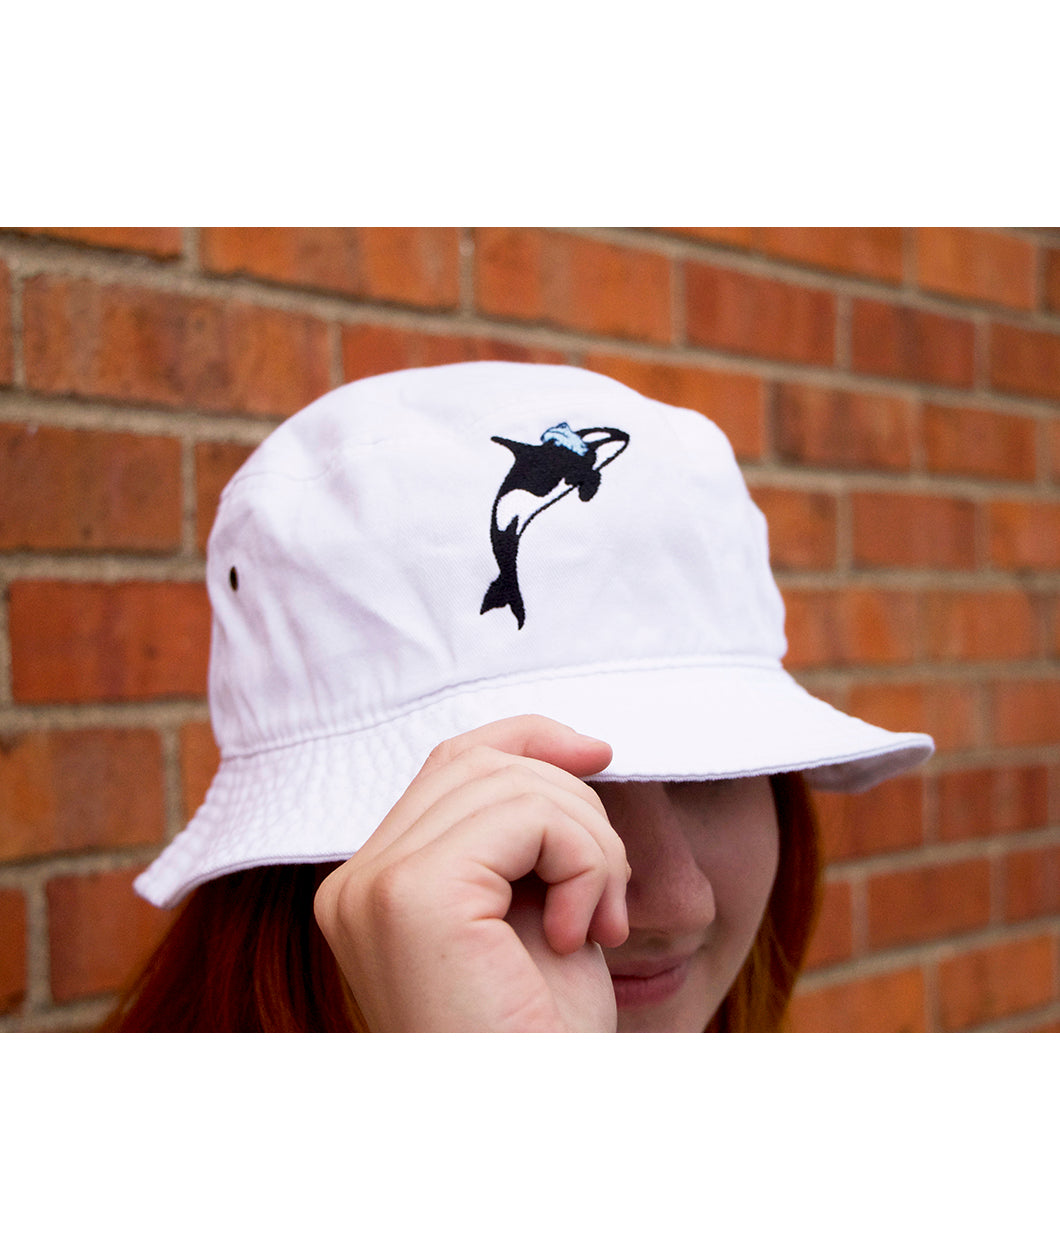 Unisex Bucket Hat - Women's accessories